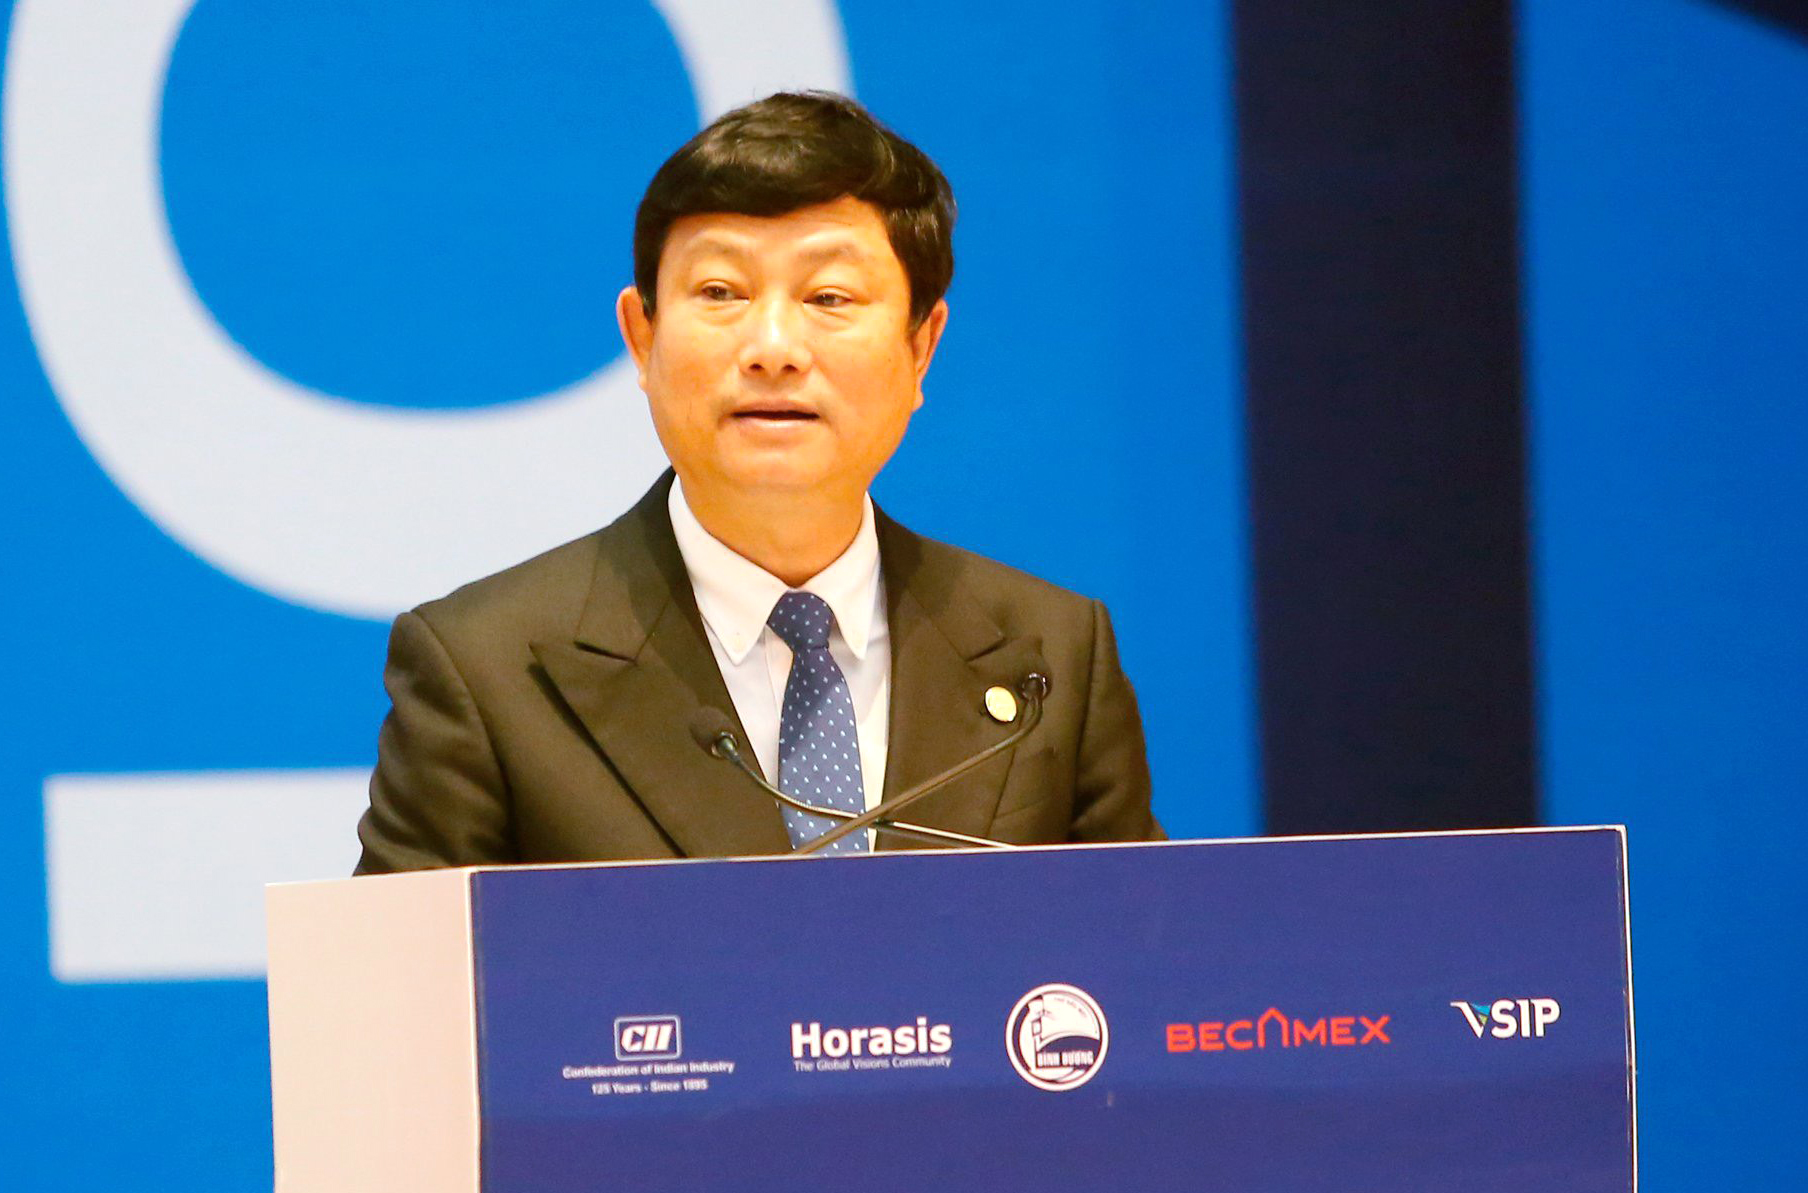 Đồng chí Võ Văn Minh - Phó Bí thư Tỉnh ủy, Chủ tịch UBND Bình Dương phát biểu tại Diễn đàn hợp tác kinh tế Ấn Độ Horasis 2022.